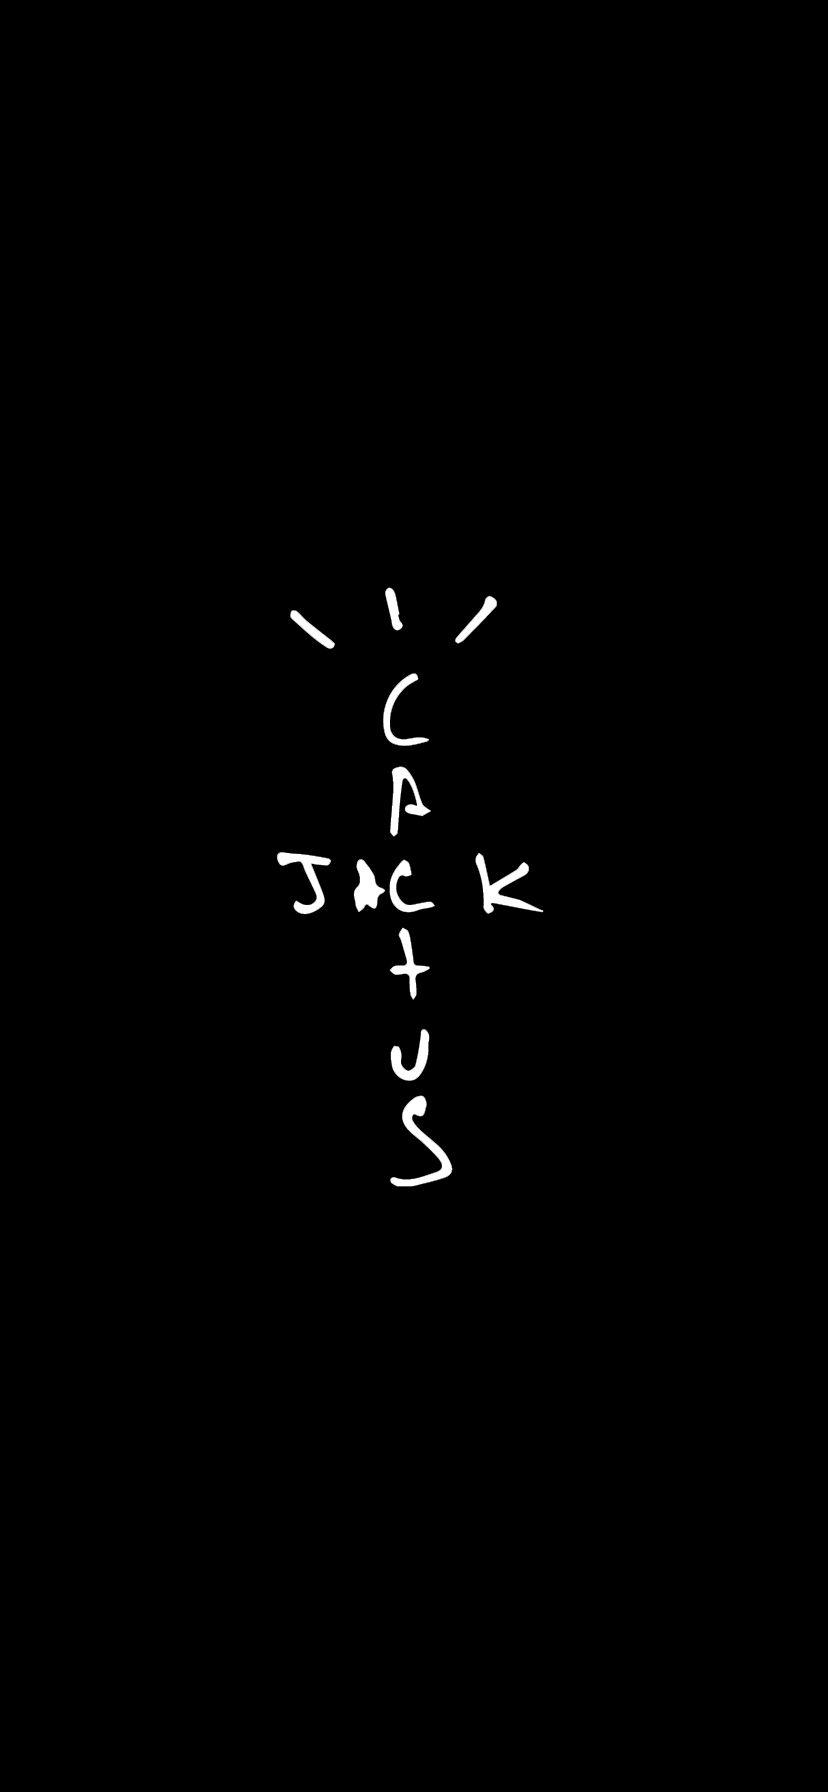 cactus jack x off white